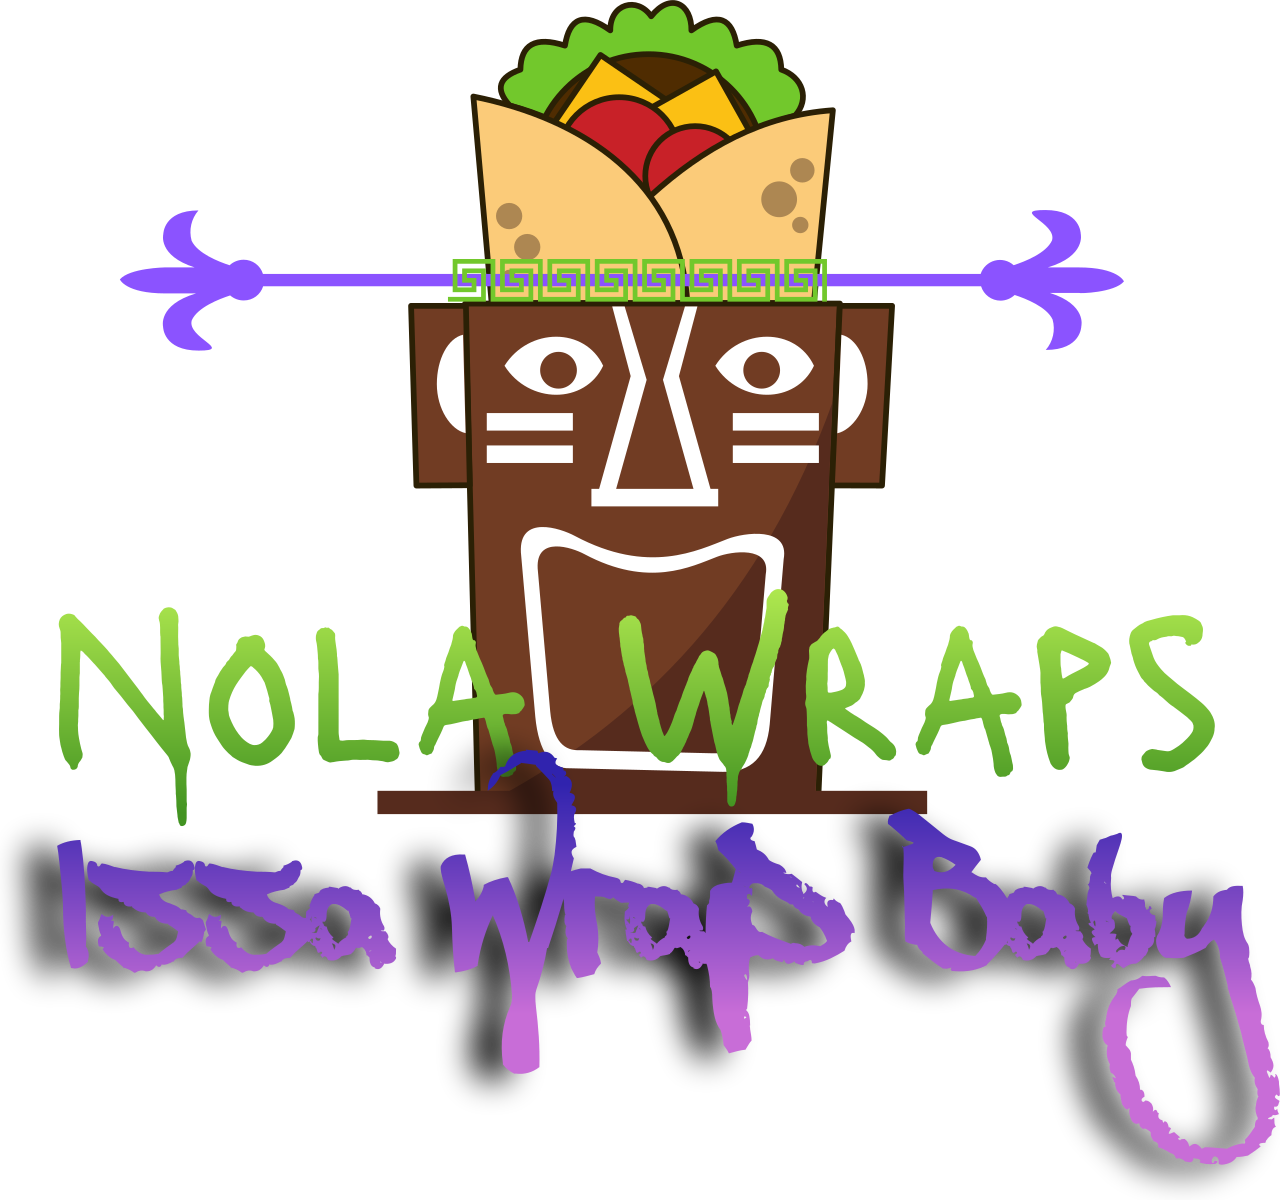 Nola Wraps's web page